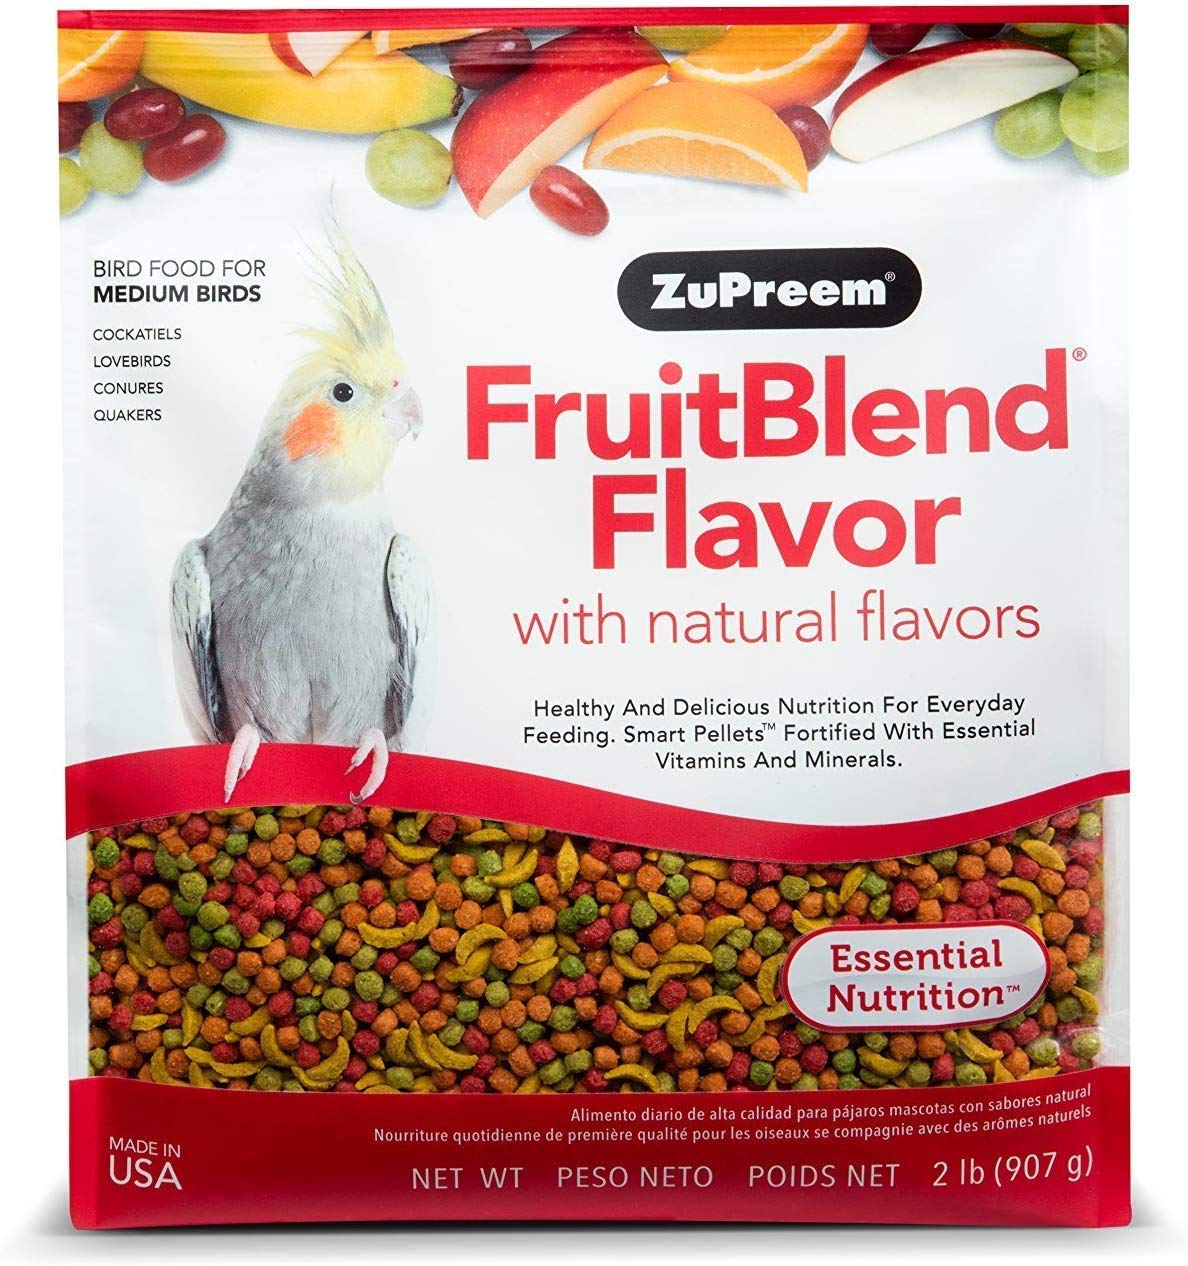 ZuPreem FruitBlend フレーバーペレット 中型鳥用バードフード (複数サイズ) - オカメイン...